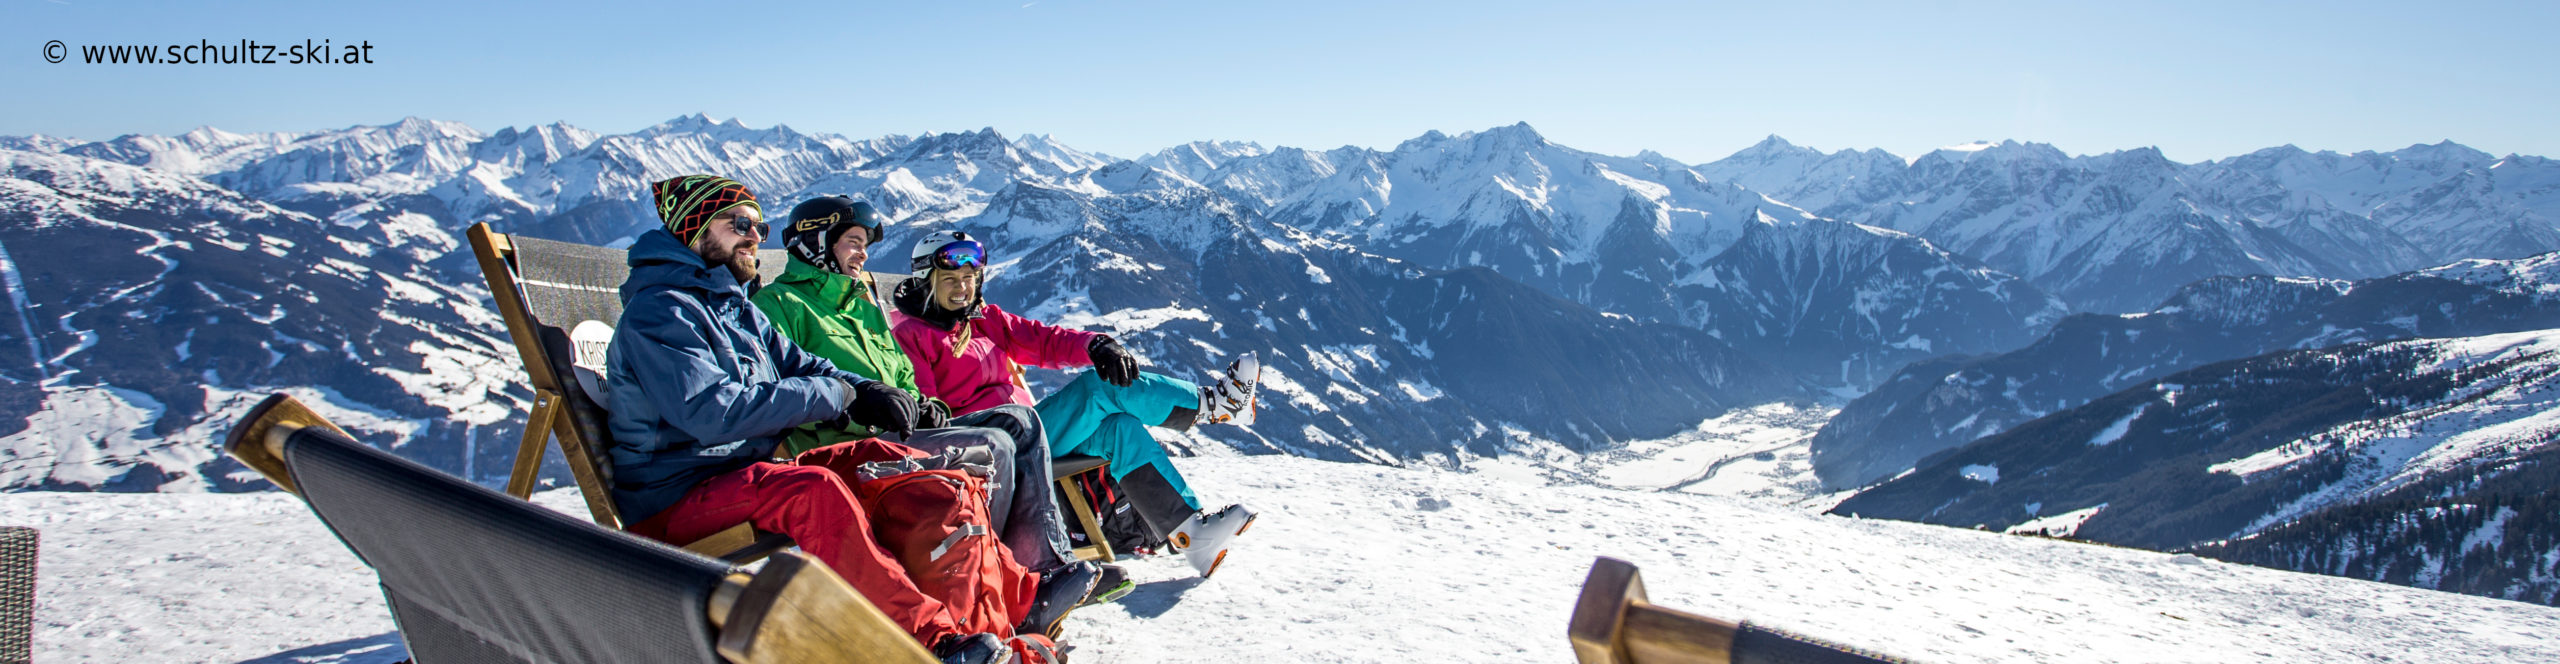 ZILLERTAL – Skiwochenende ab Donnerstag Nachmittag – Hotel in Strass – Skisafari Zell & Kaltenbach 